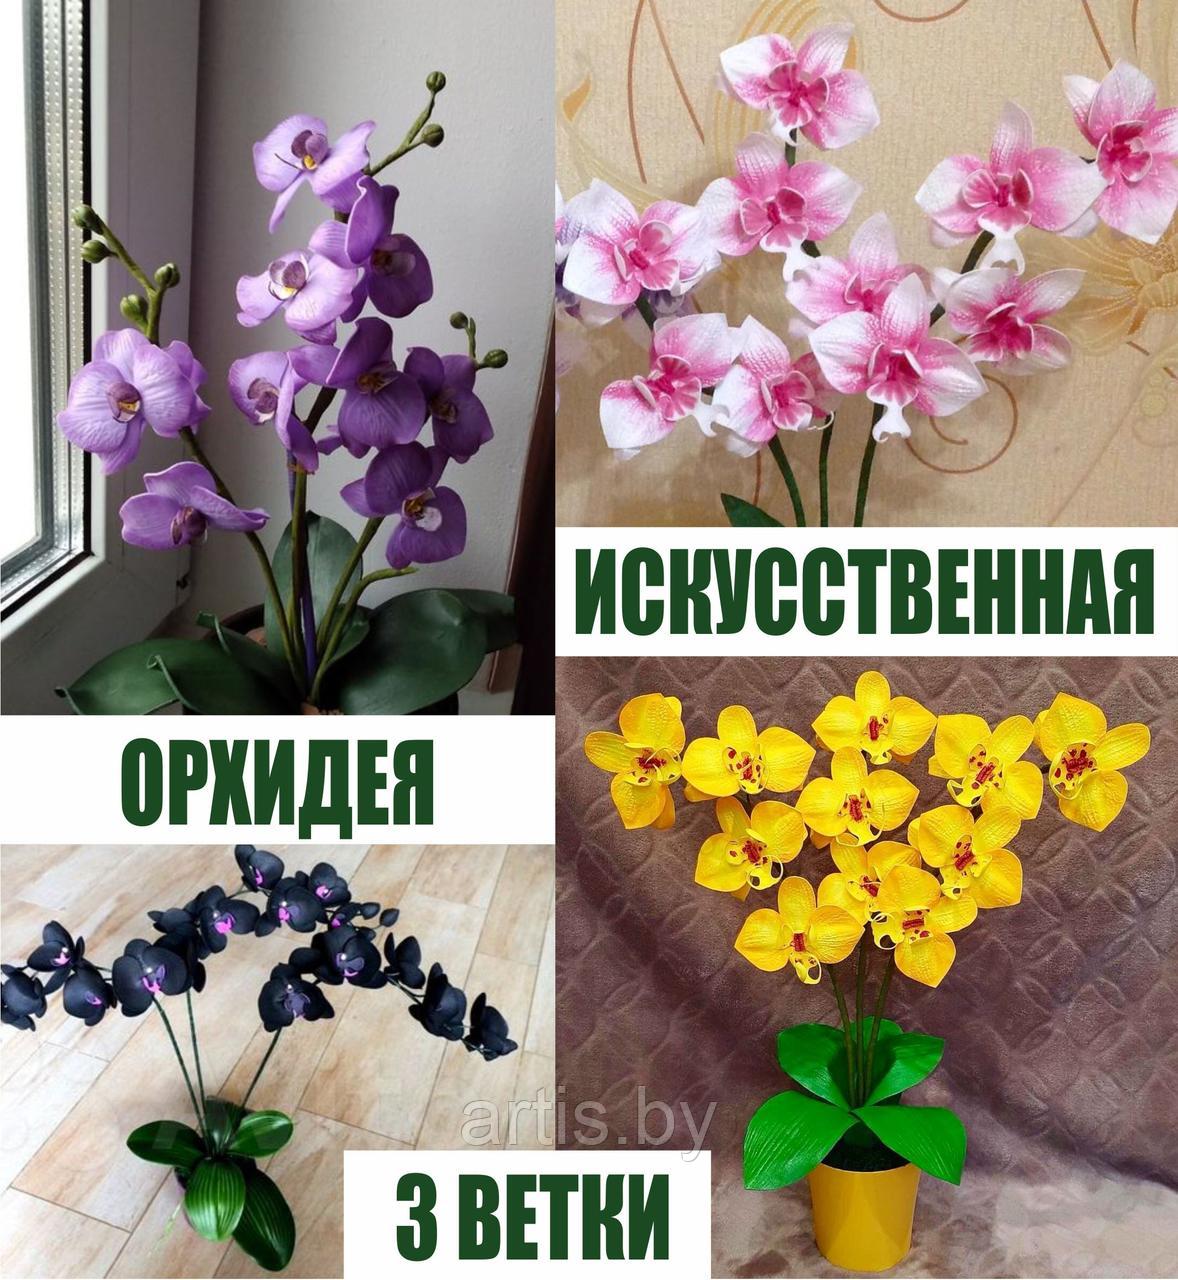 Искусственные орхидеи (3 ветки), фото 1